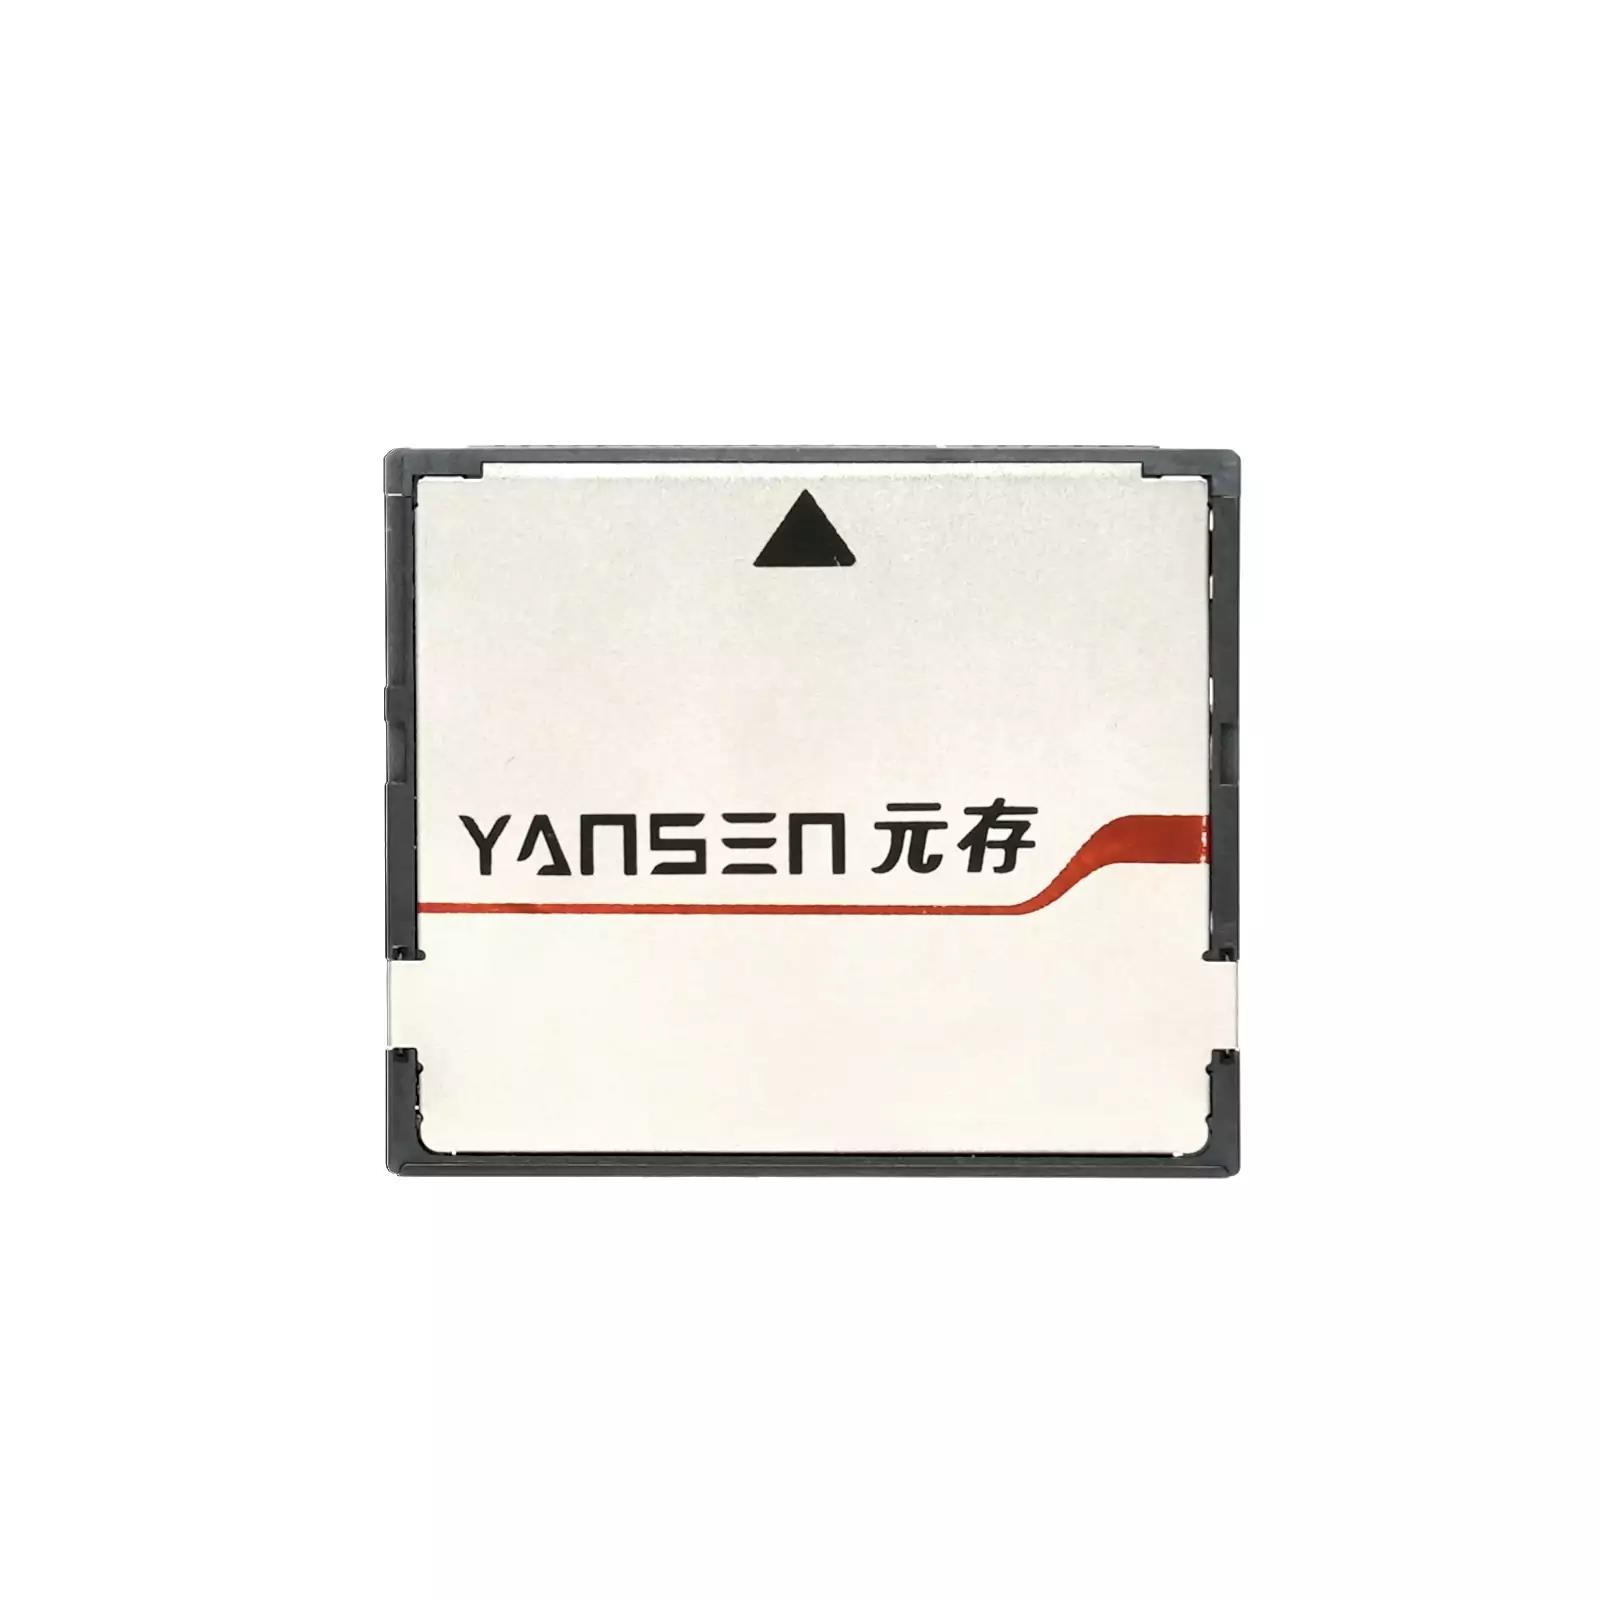 YSCS-16